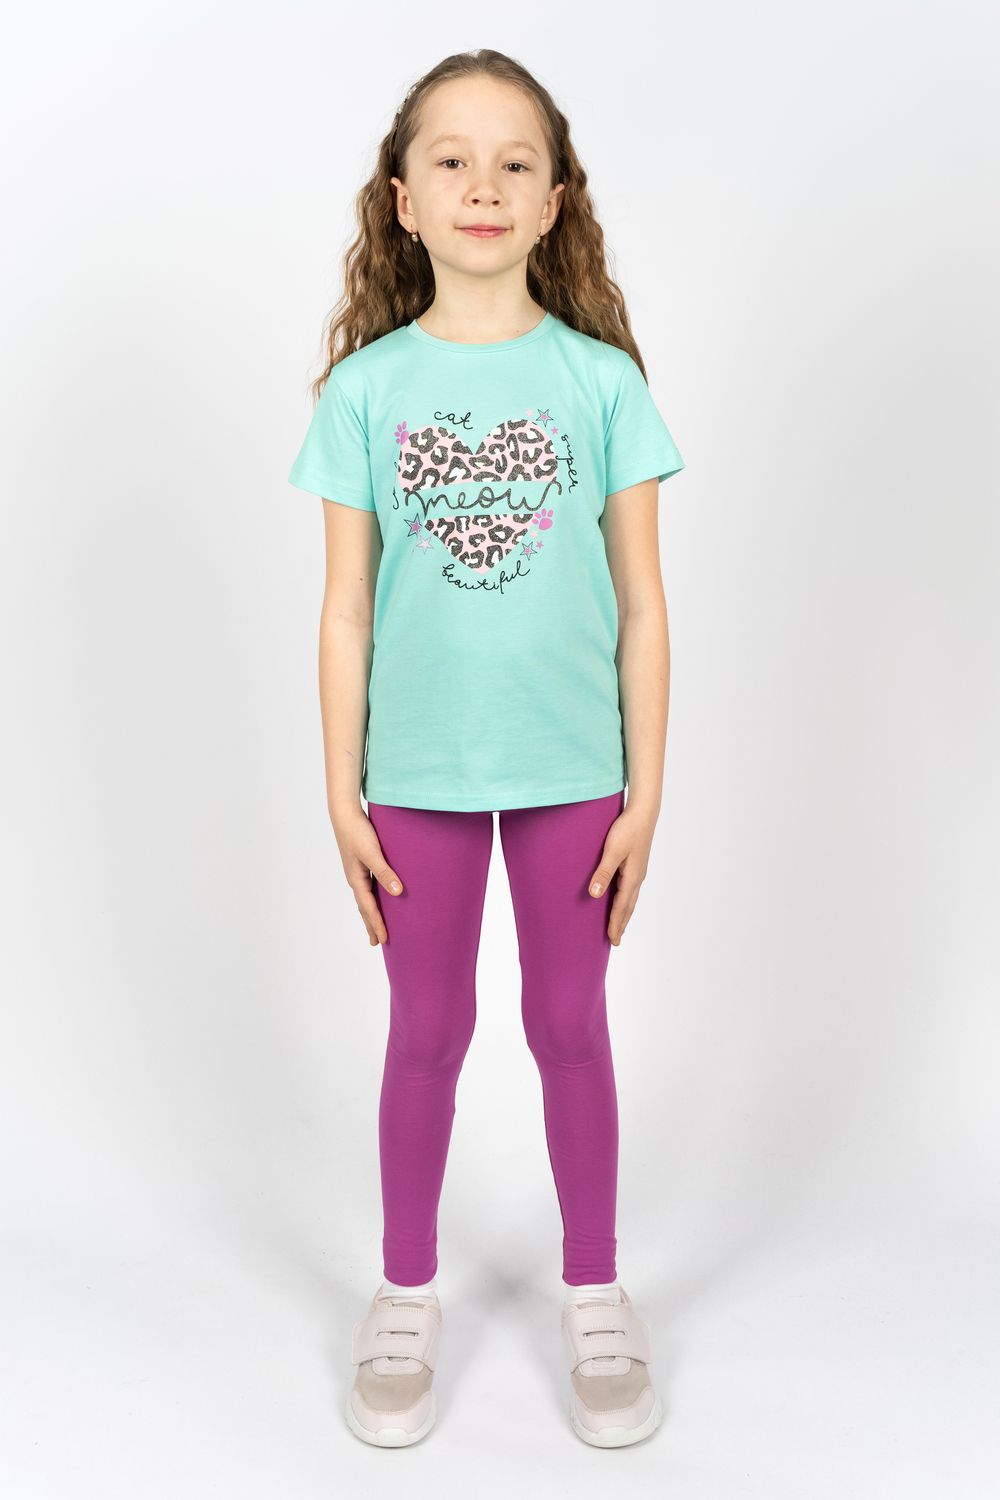 Комплект для девочки 41109 (футболка + лосины) - мятный/лиловый